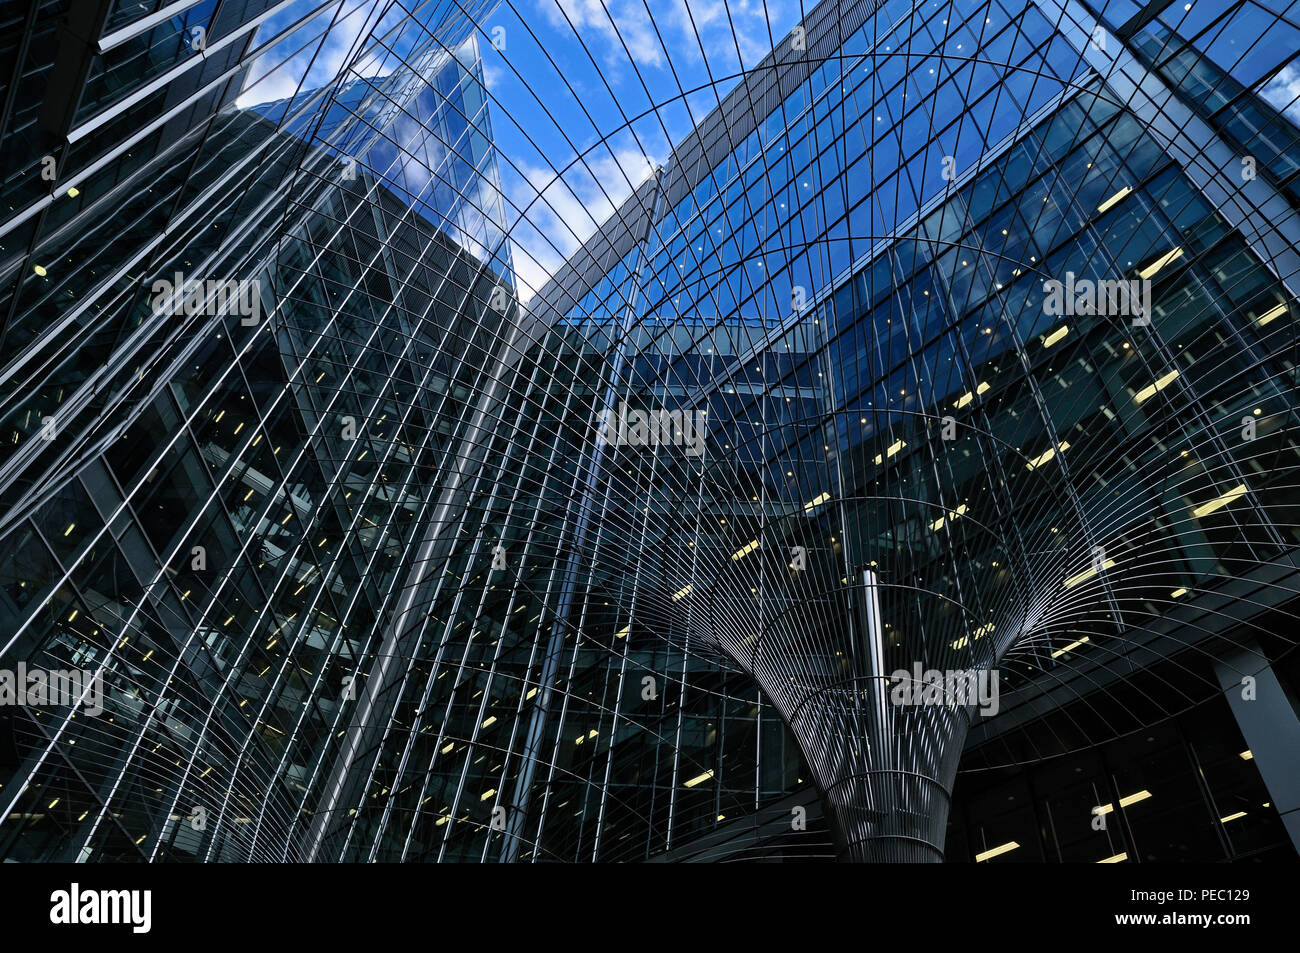 Résumé de l'architecture contemporaine d'immeubles de bureaux en verre, London, England, UK Banque D'Images